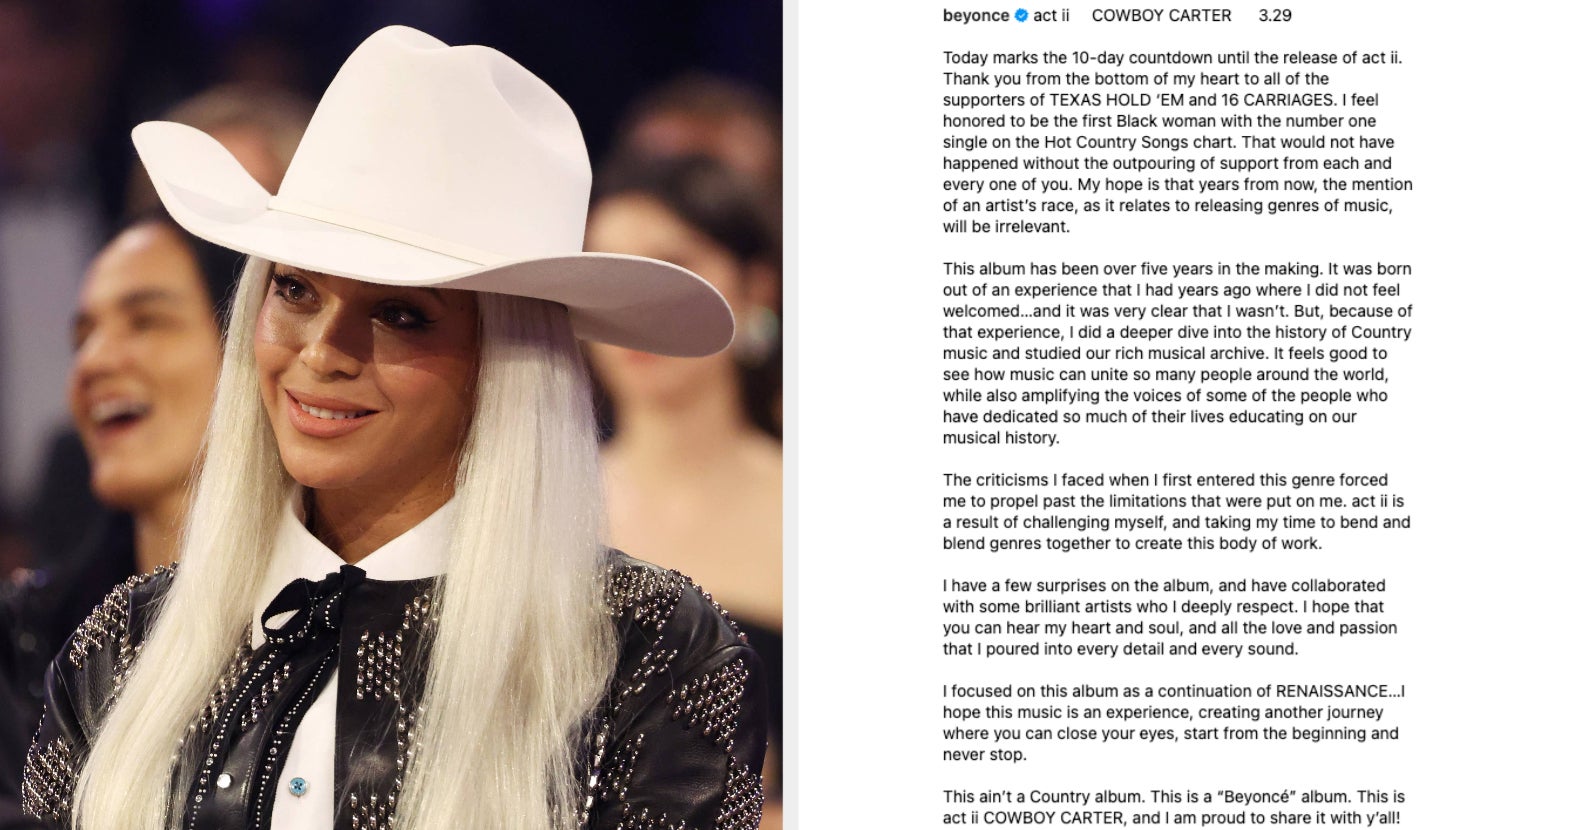 Beyoncé Happy Cowboy Carter albumát az ihlette, hogy nem érezte jól magát a country zenében